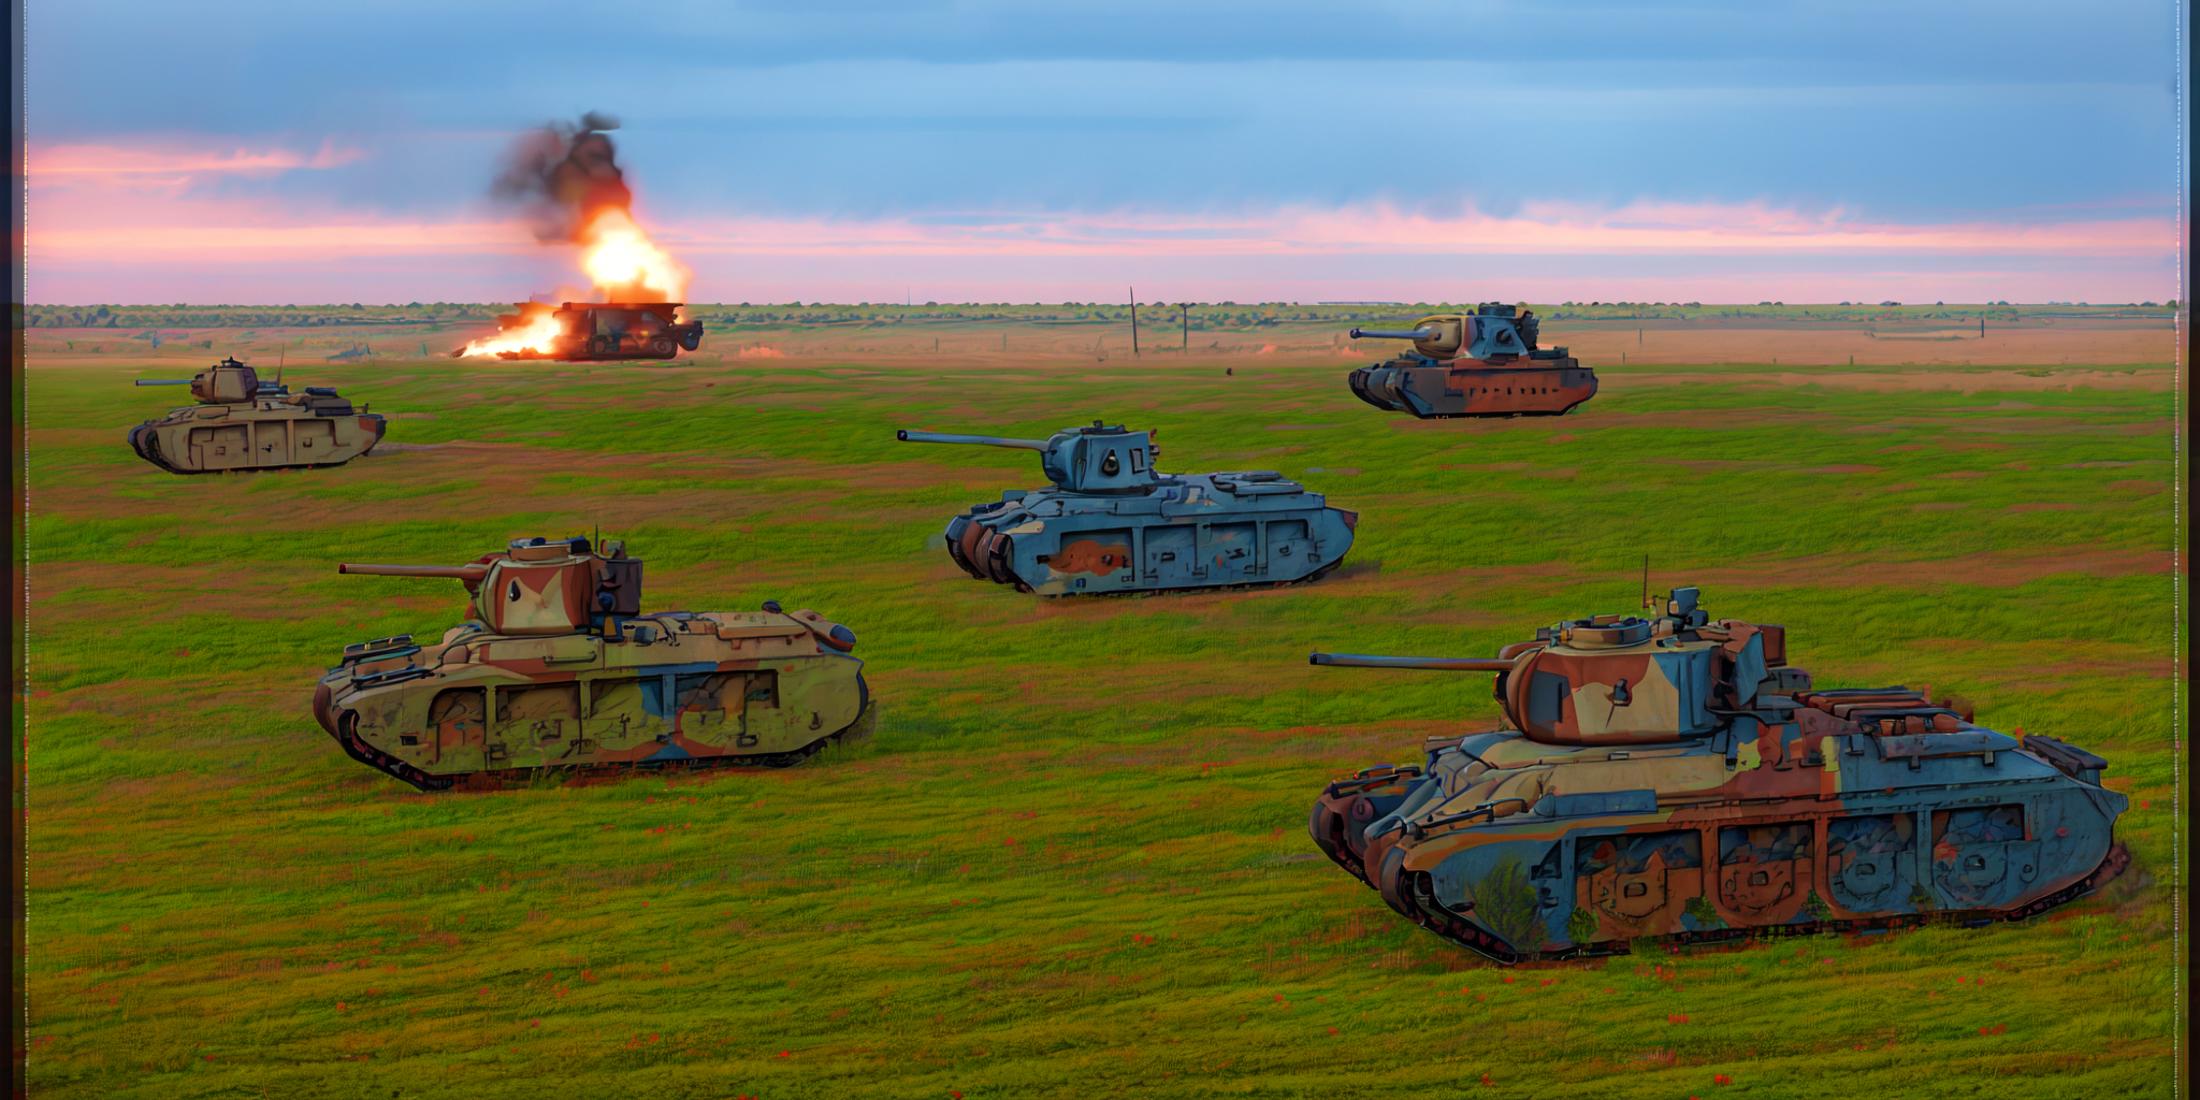 Matilda II Tank image by MajMorse